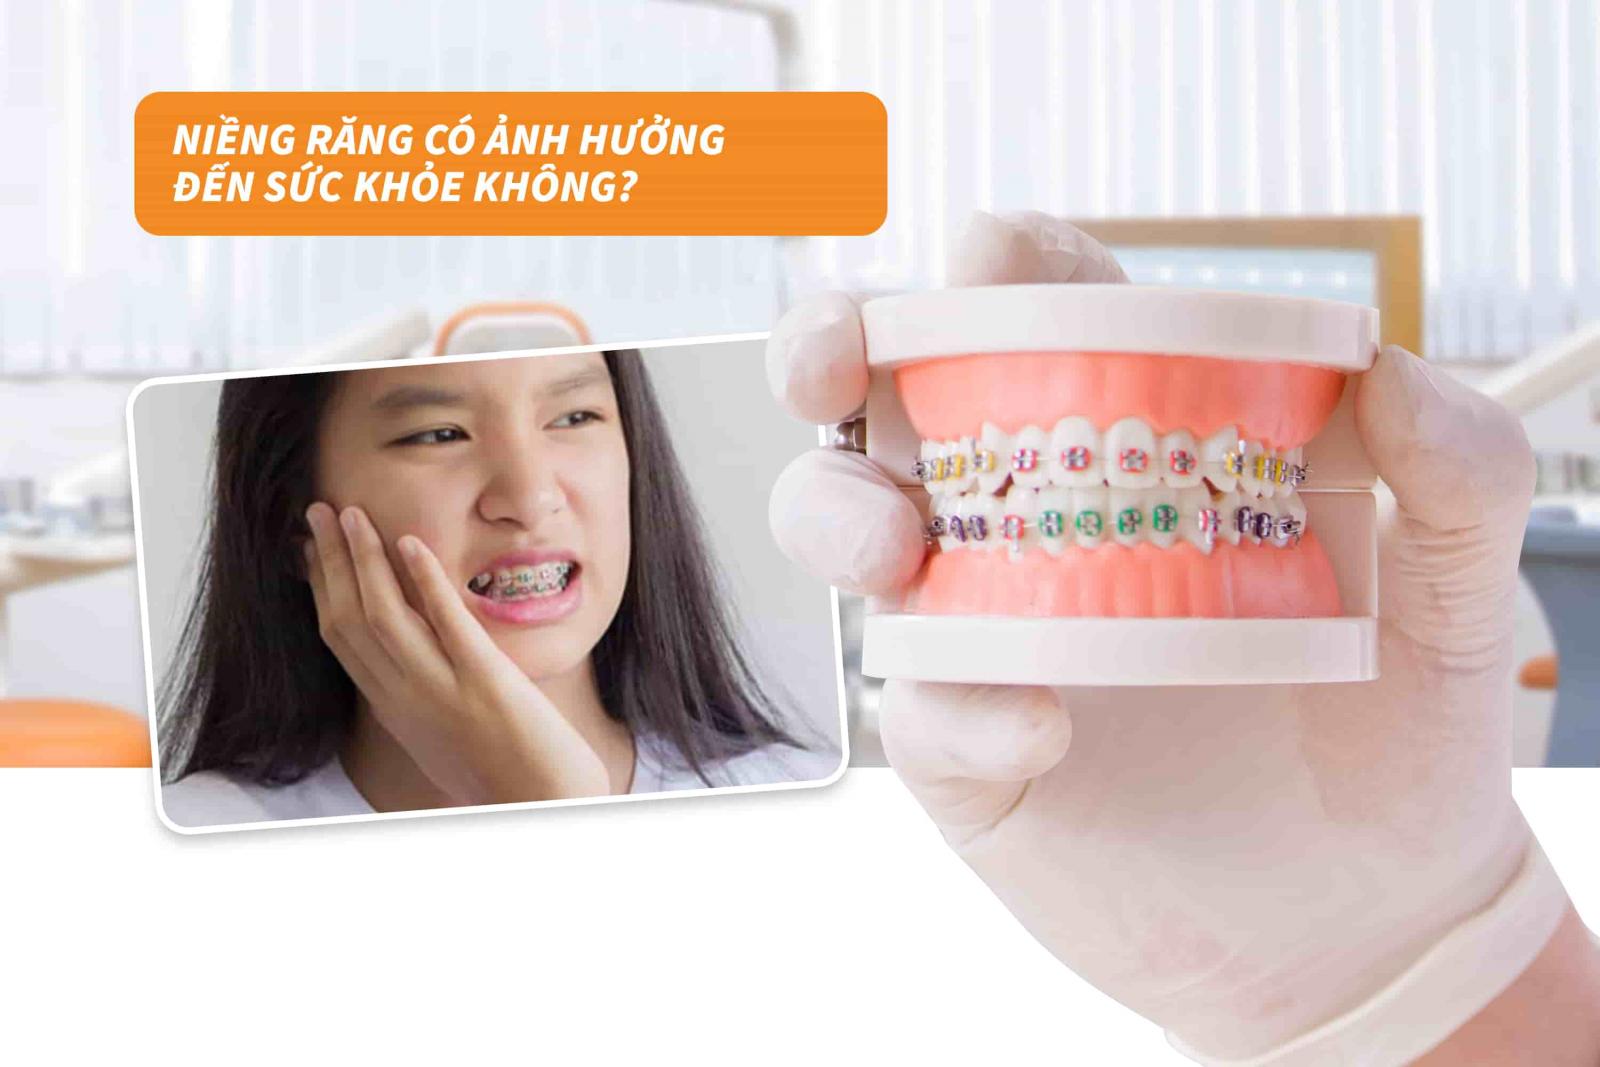 Niềng răng có ảnh hưởng đến sức khỏe không?